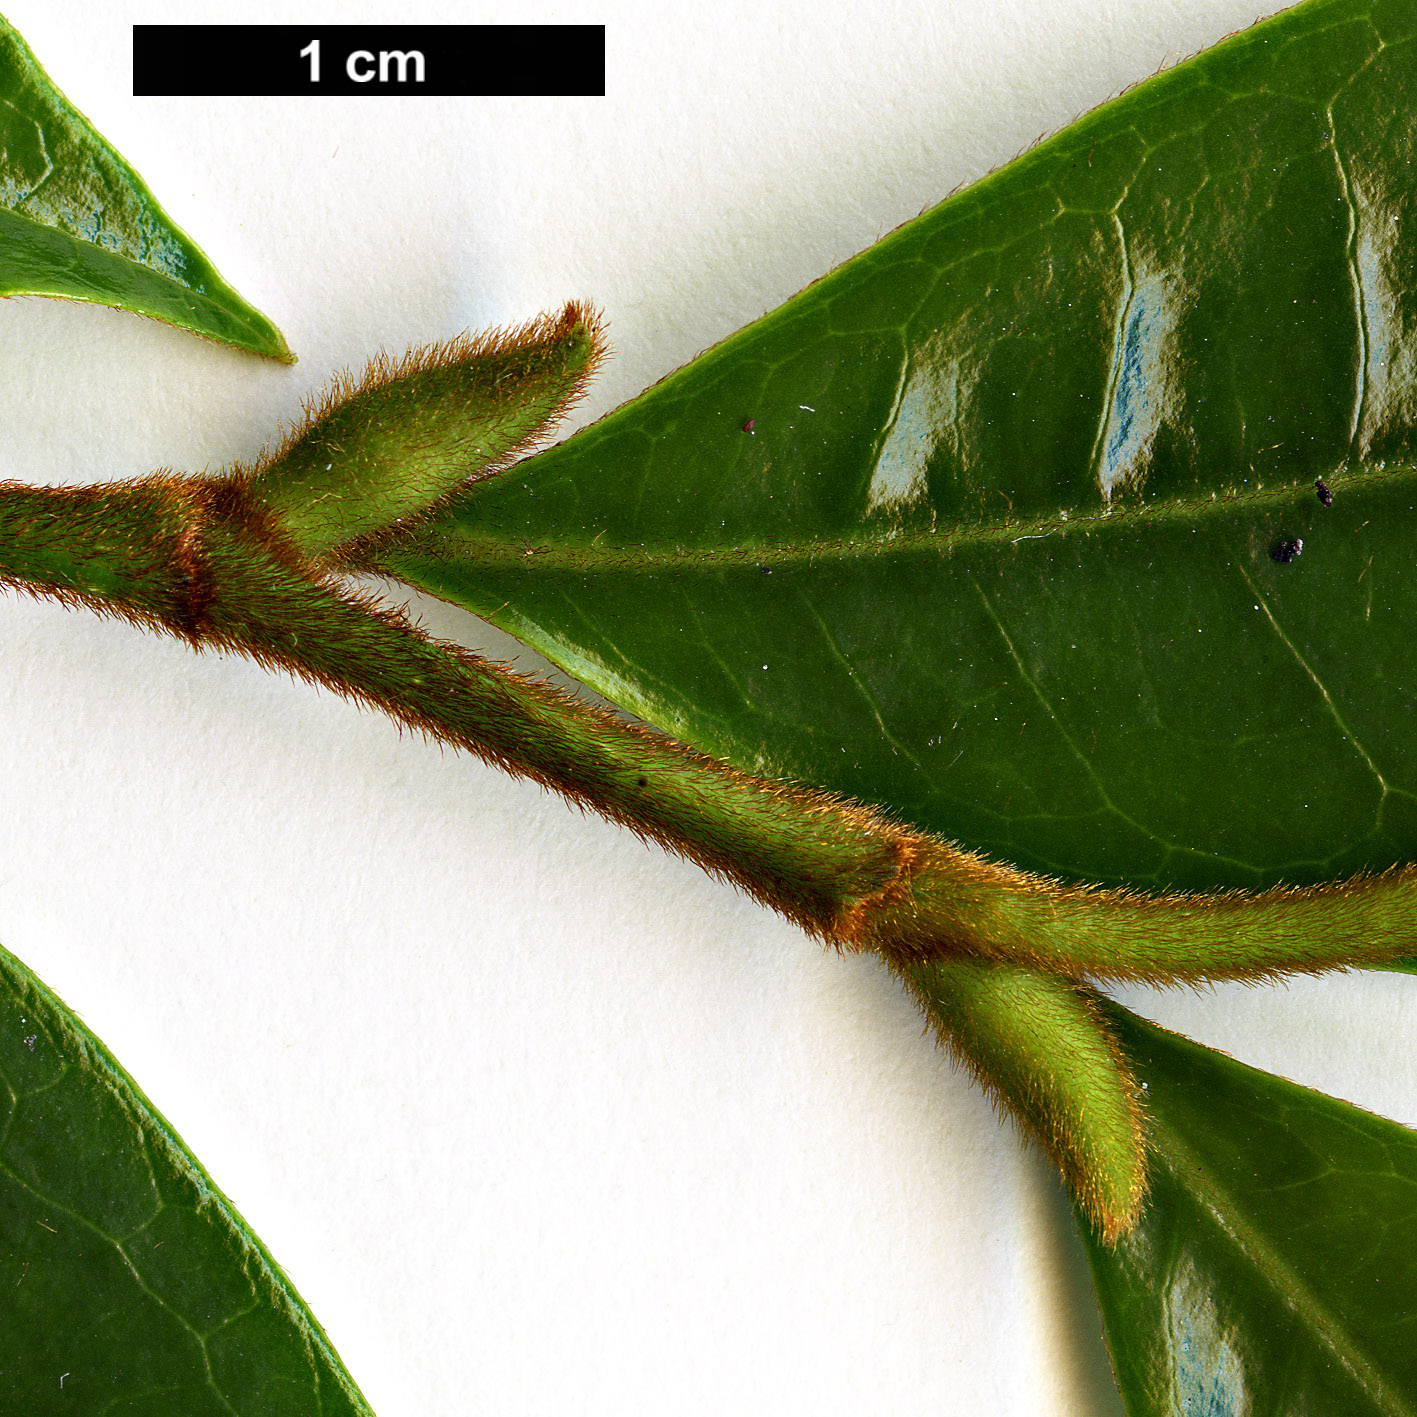 High resolution image: Family: Magnoliaceae - Genus: Magnolia - Taxon: figo - SpeciesSub: var. crassipes